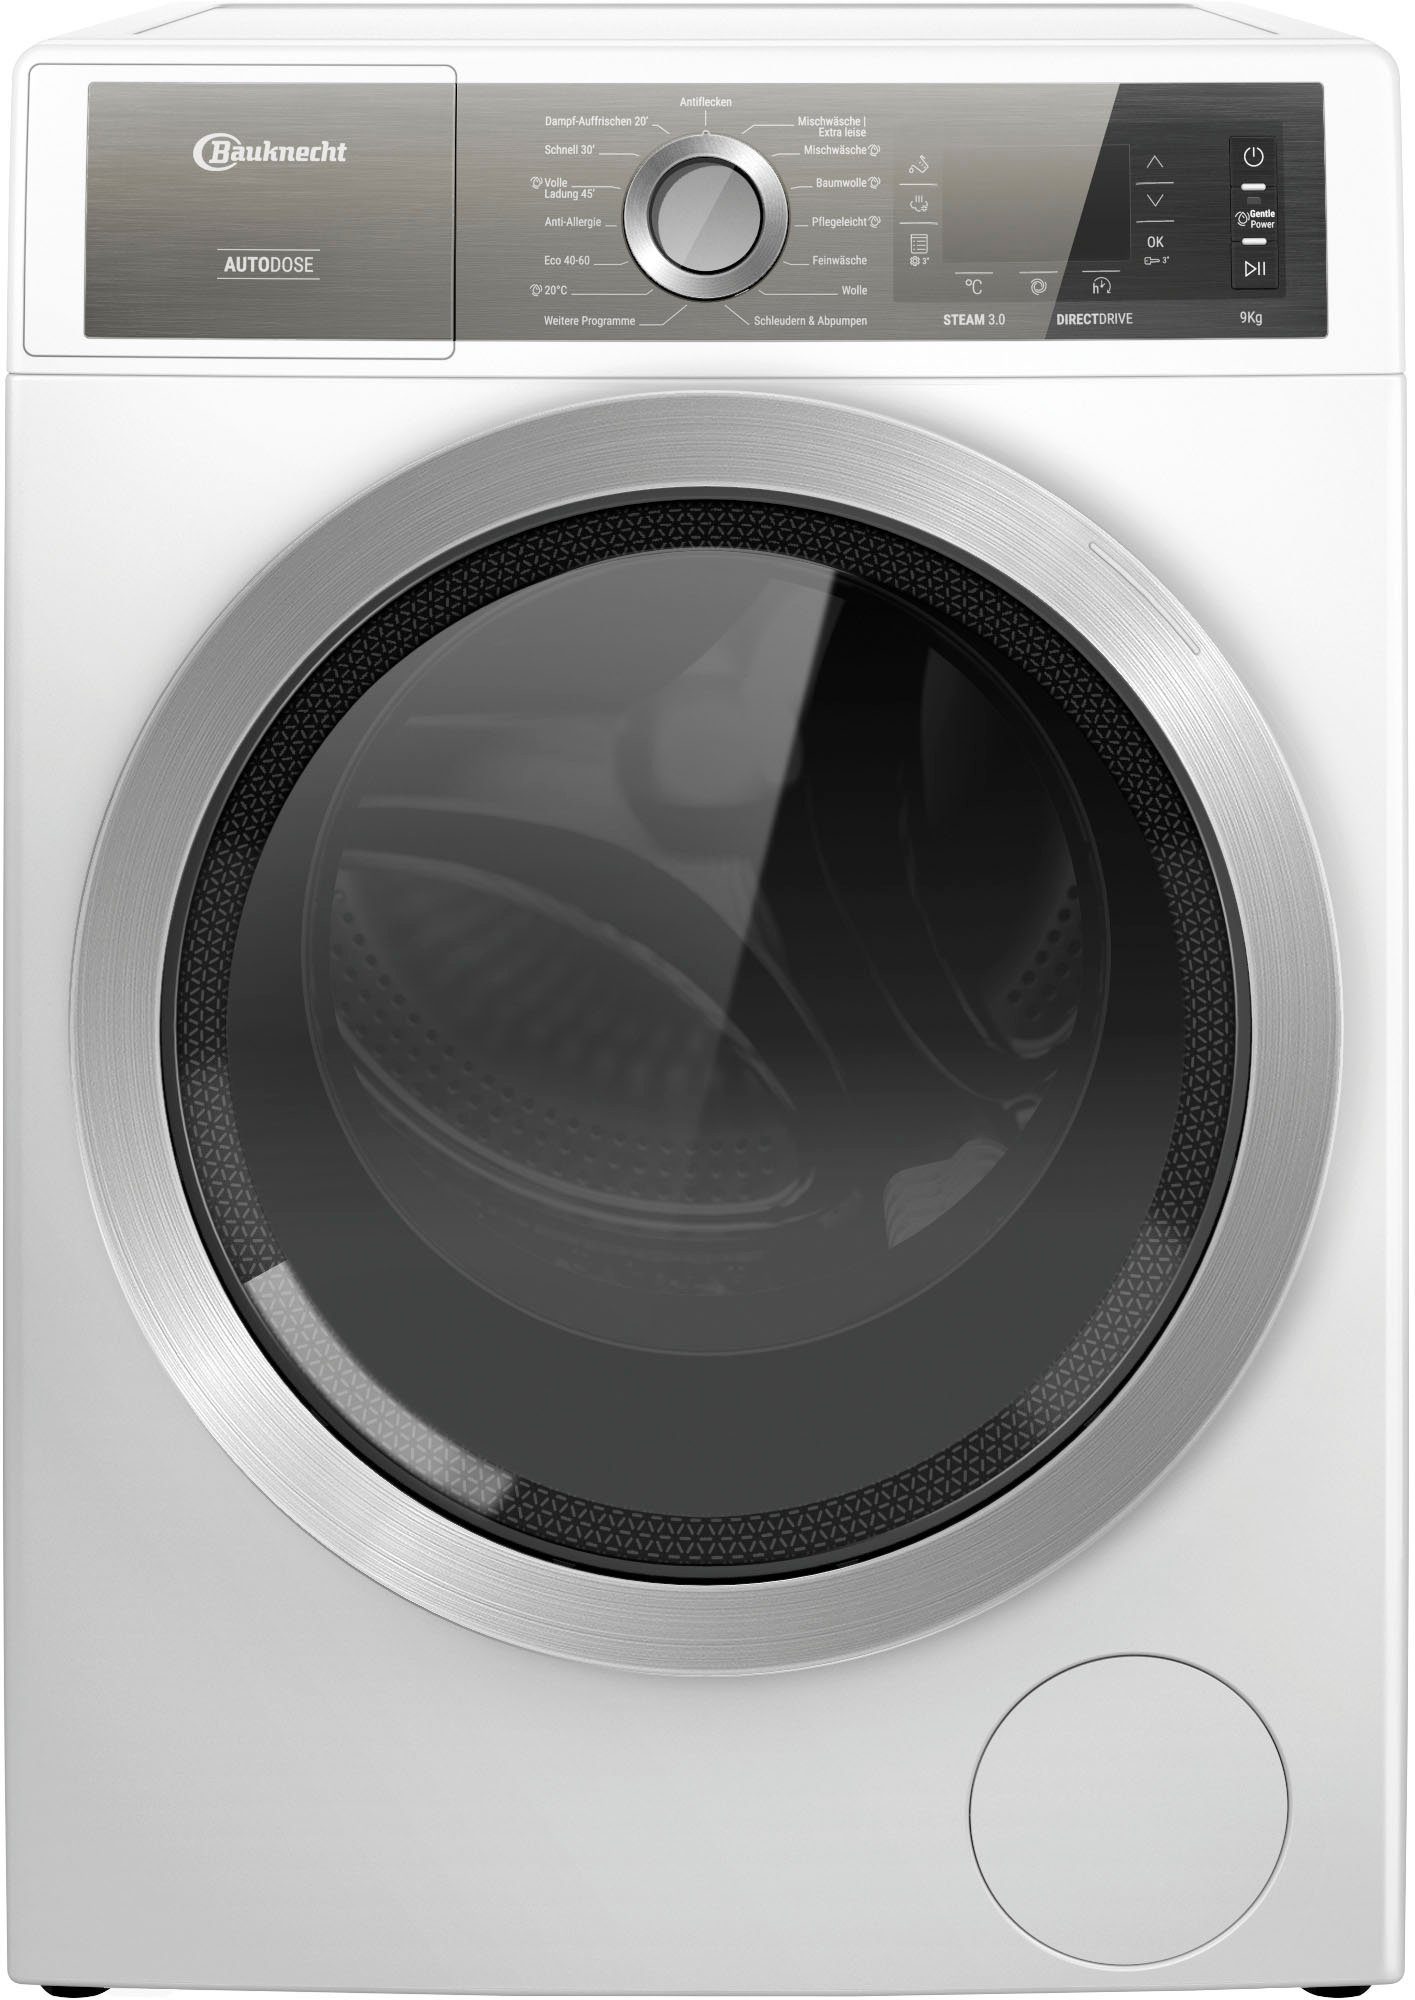 BAUKNECHT Waschmaschine B8 W946WB DE, 9 Jahre kg, AutoDose, 4 U/min, Herstellergarantie 1400